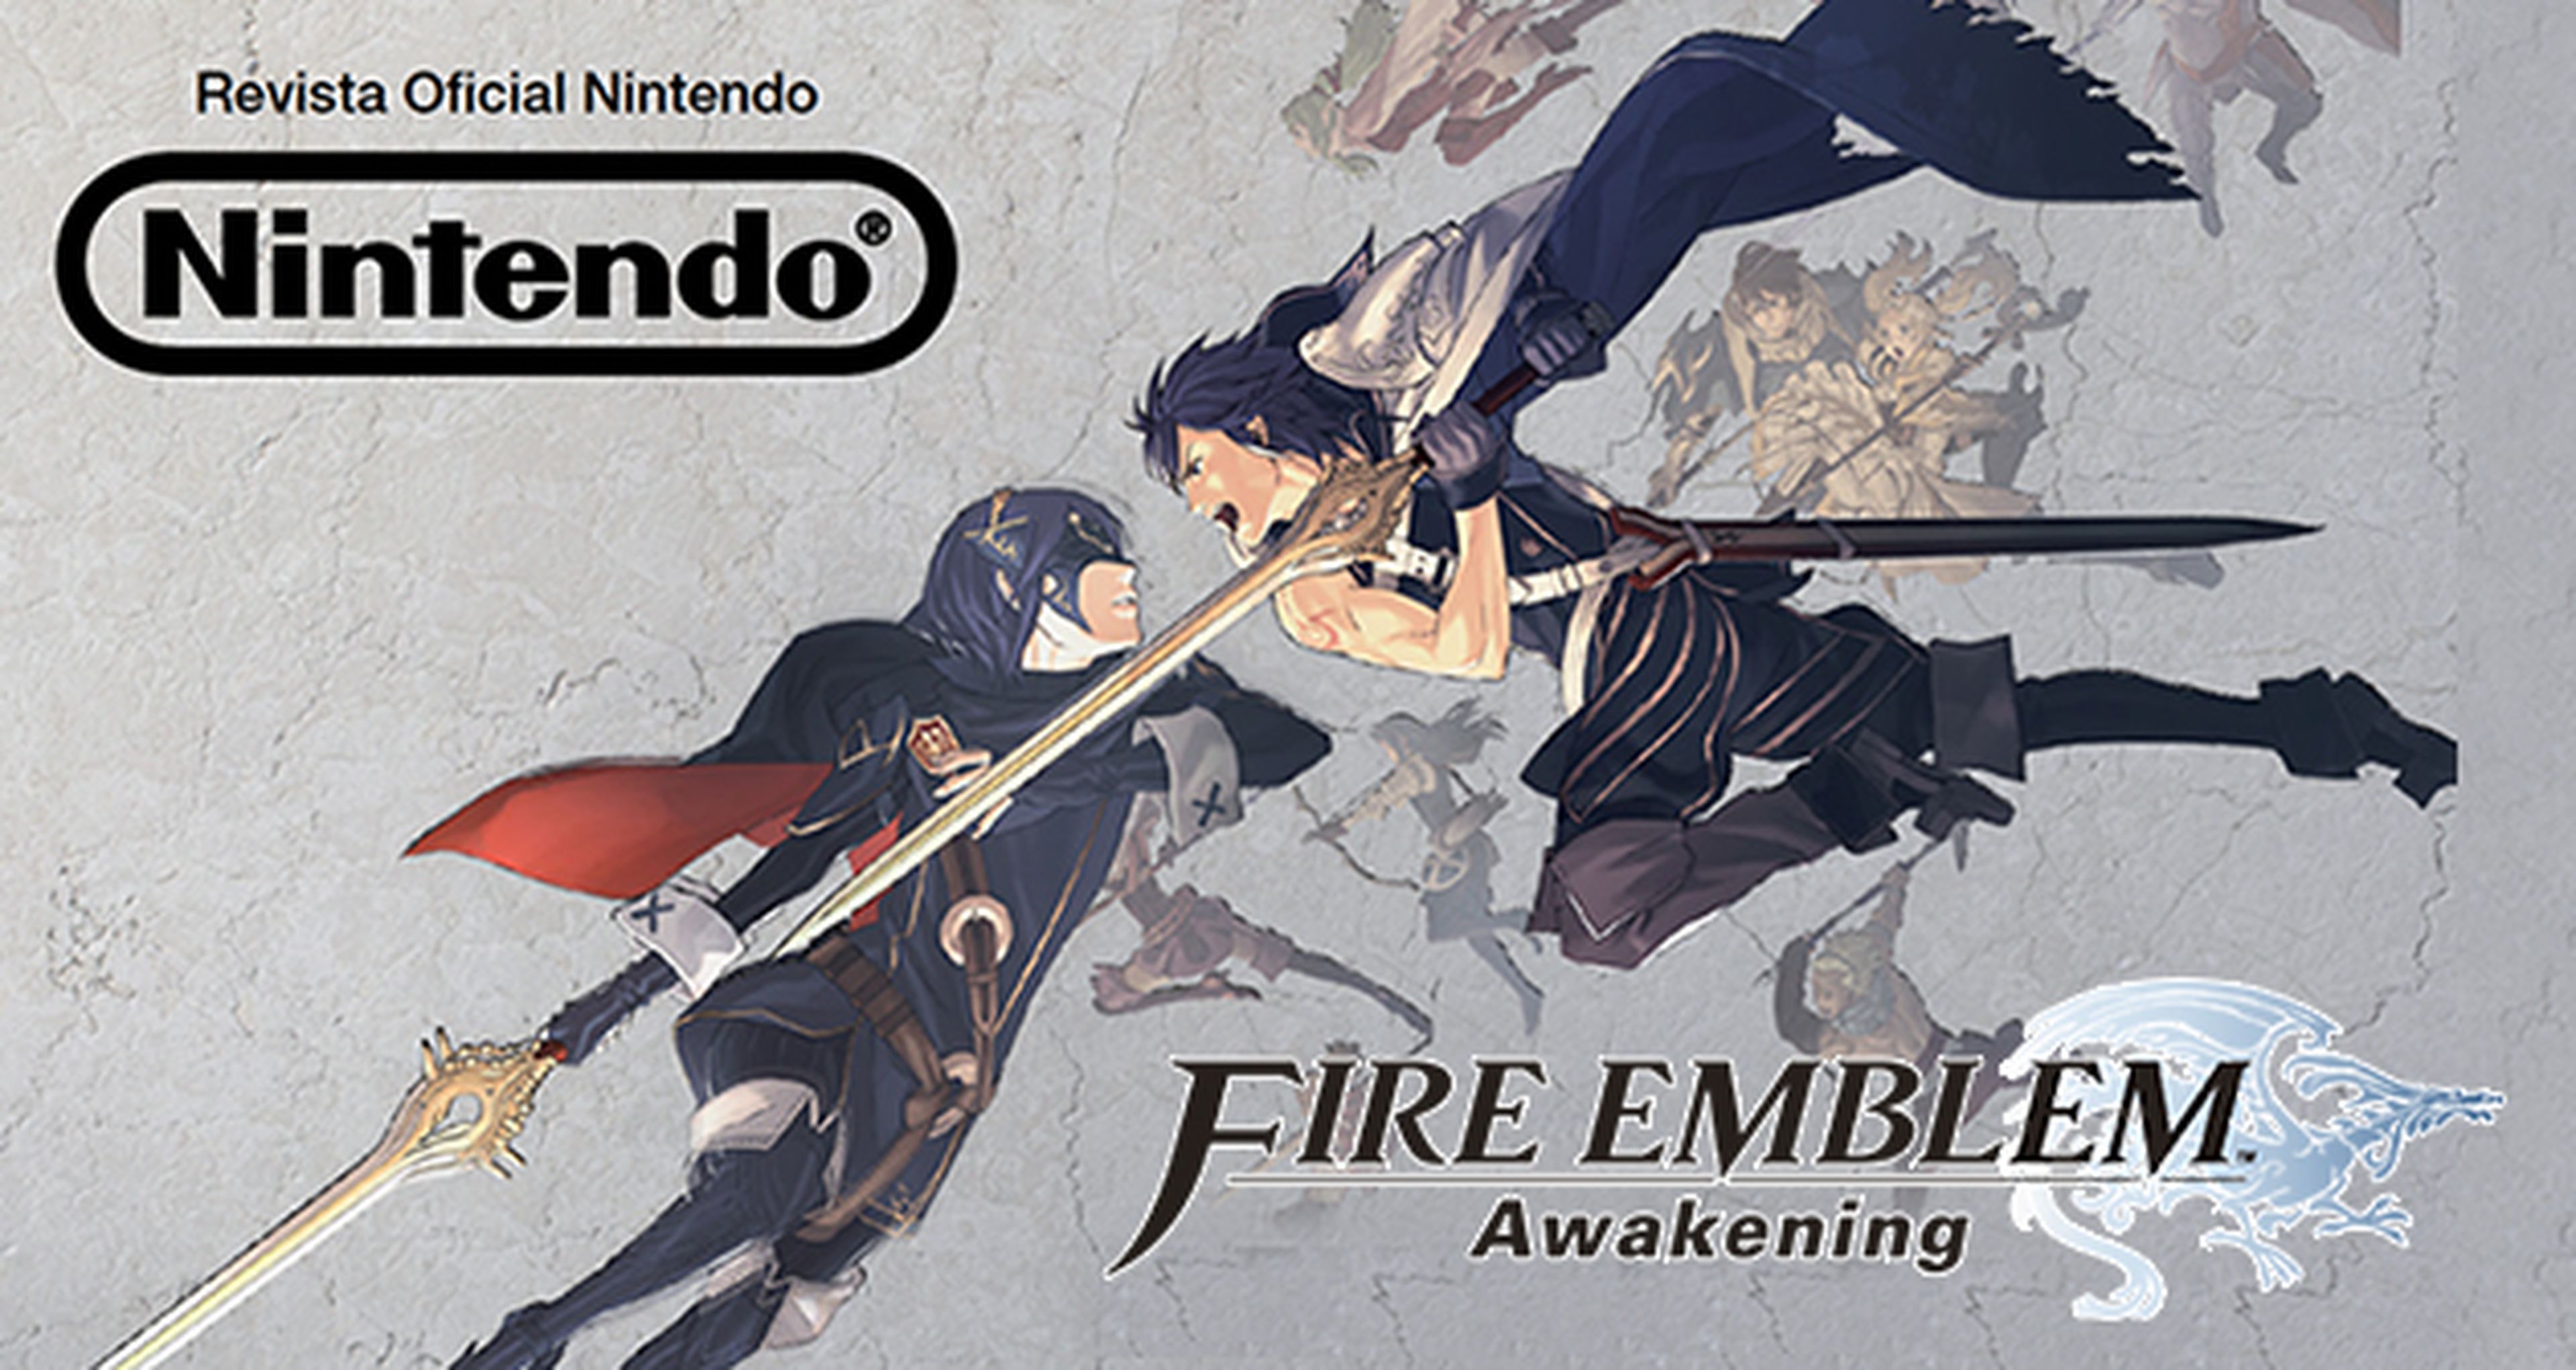 Descarga gratis una miniguía con la historia de la saga y los personajes de Fire Emblem